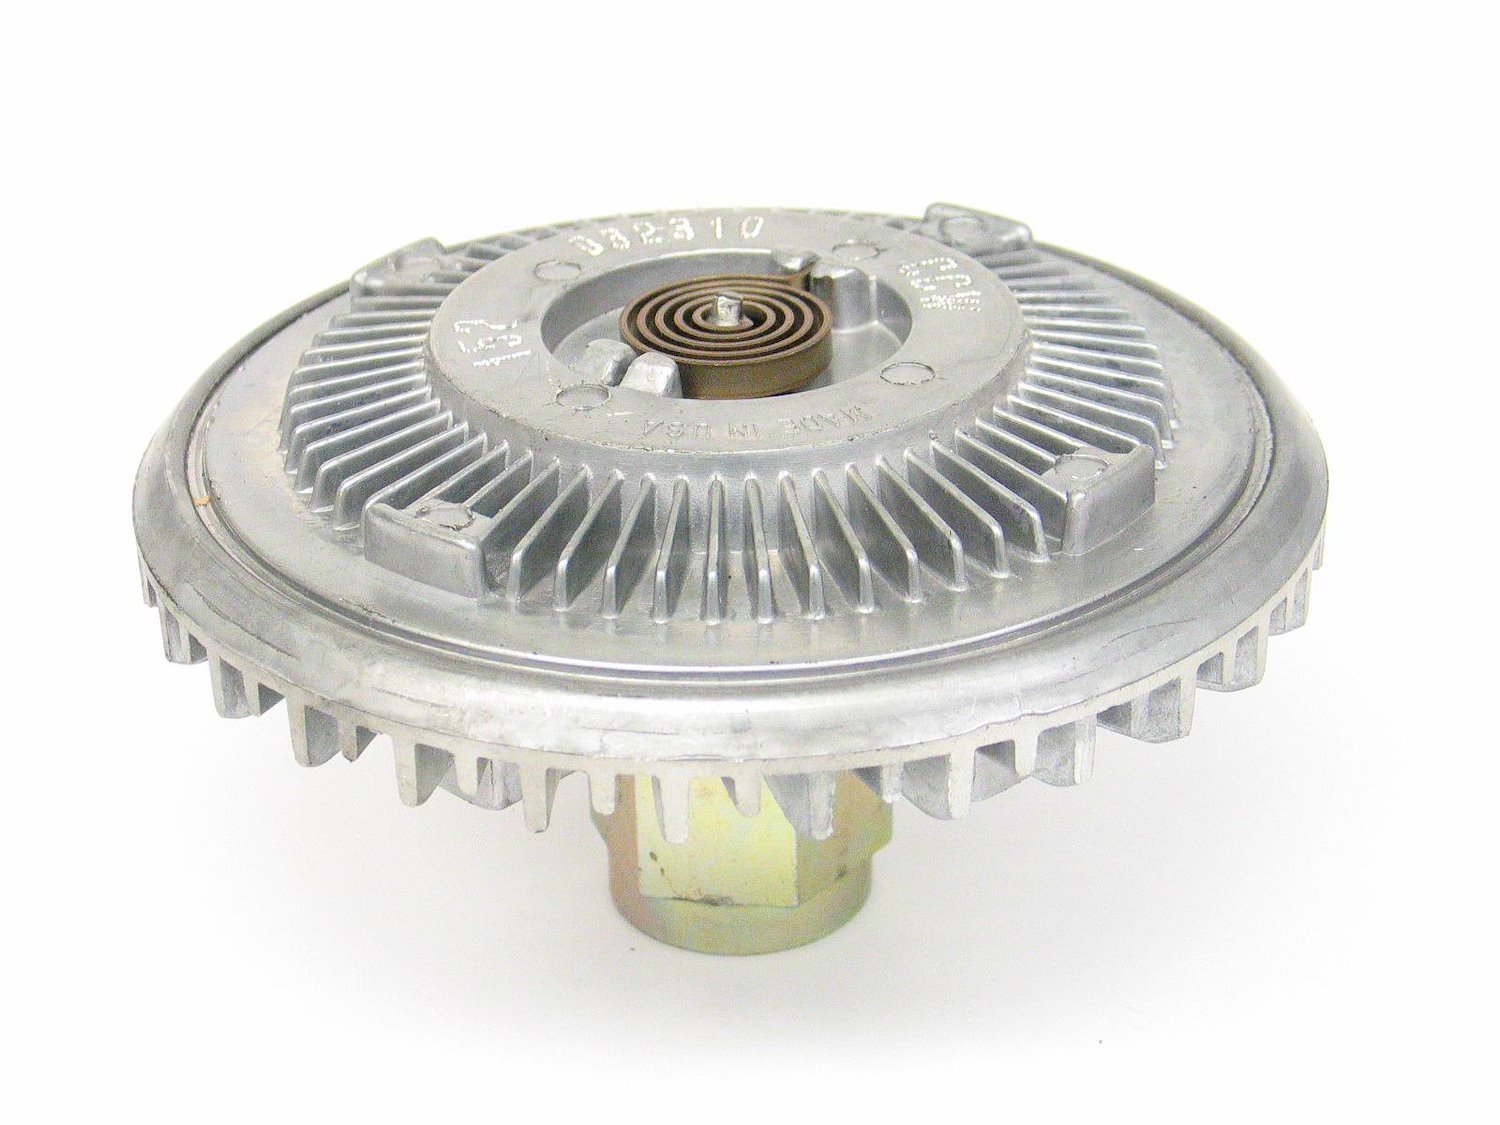 Standard Duty Thermal Fan Clutch for 2009-2013 Dodge